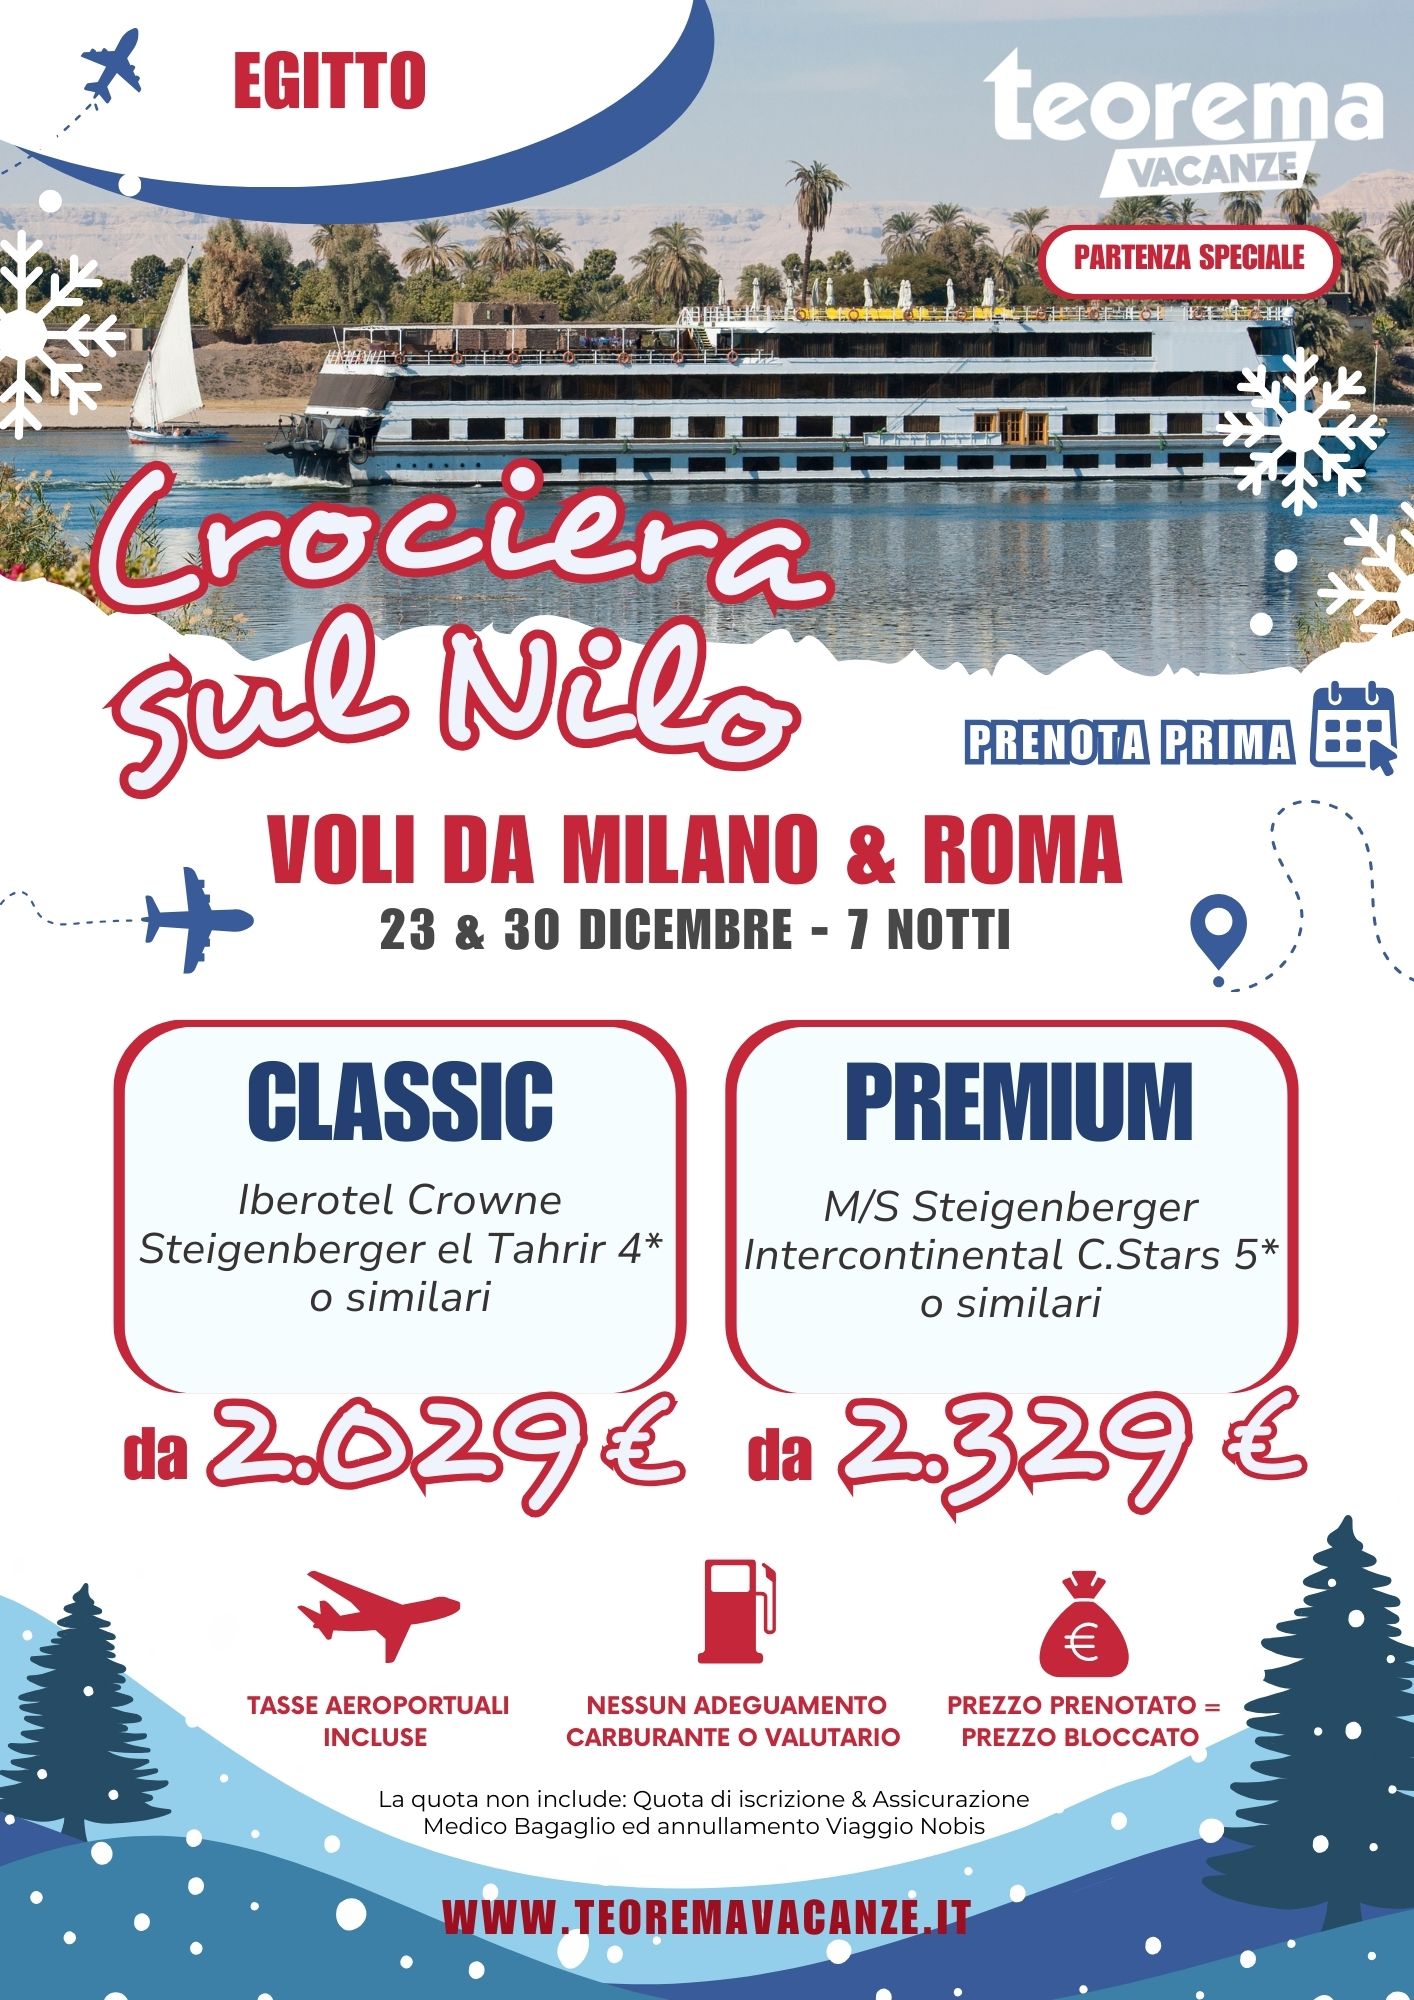 TEOREMA WINTER 2025 - CROCIERA SUL NILO - DA MILANO & ROMA